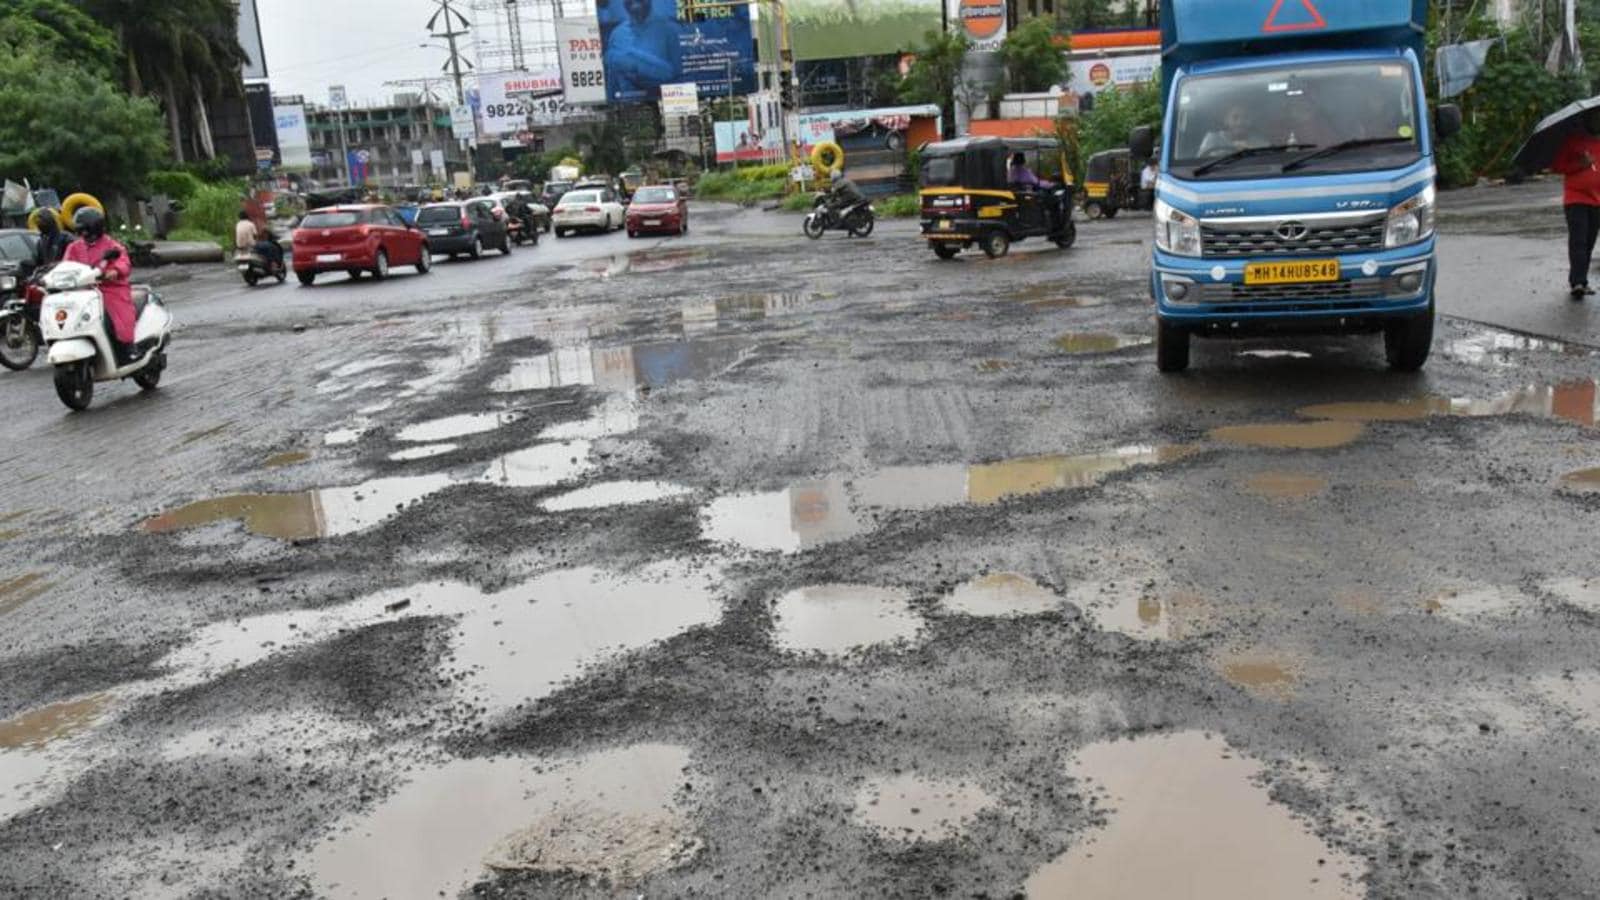  Pune Potholes | रस्त्यावर पडलेले खड्डे त्वरीत बुजवा अन्यथा शिवसेना स्टाईल आंदोलन करण्यात येईल | शहर अध्यक्ष प्रमोद भानगिरे यांचा इशारा